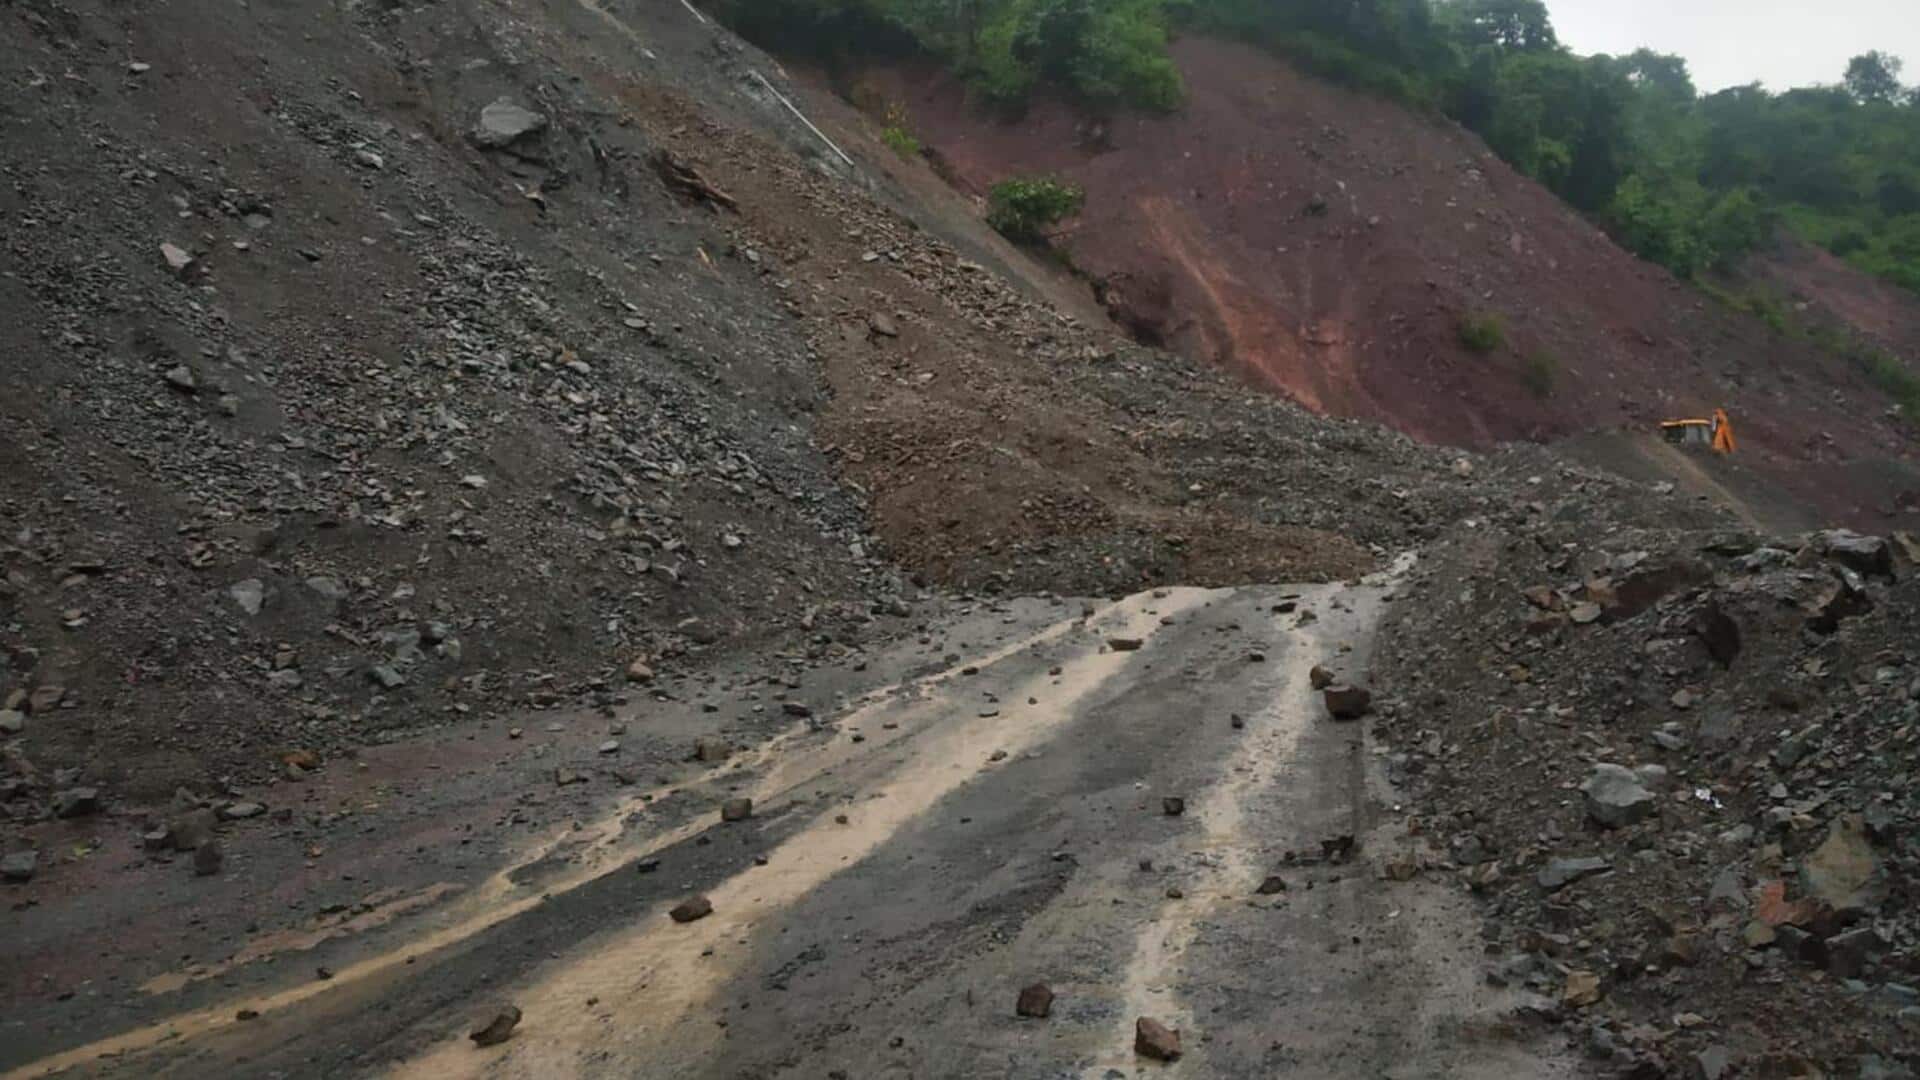 हिमाचल प्रदेश: संकरे रास्ते में बदला कुल्लू-मंडी राष्ट्रीय राजमार्ग, जान जोखिम में डालकर निकल रहे वाहन